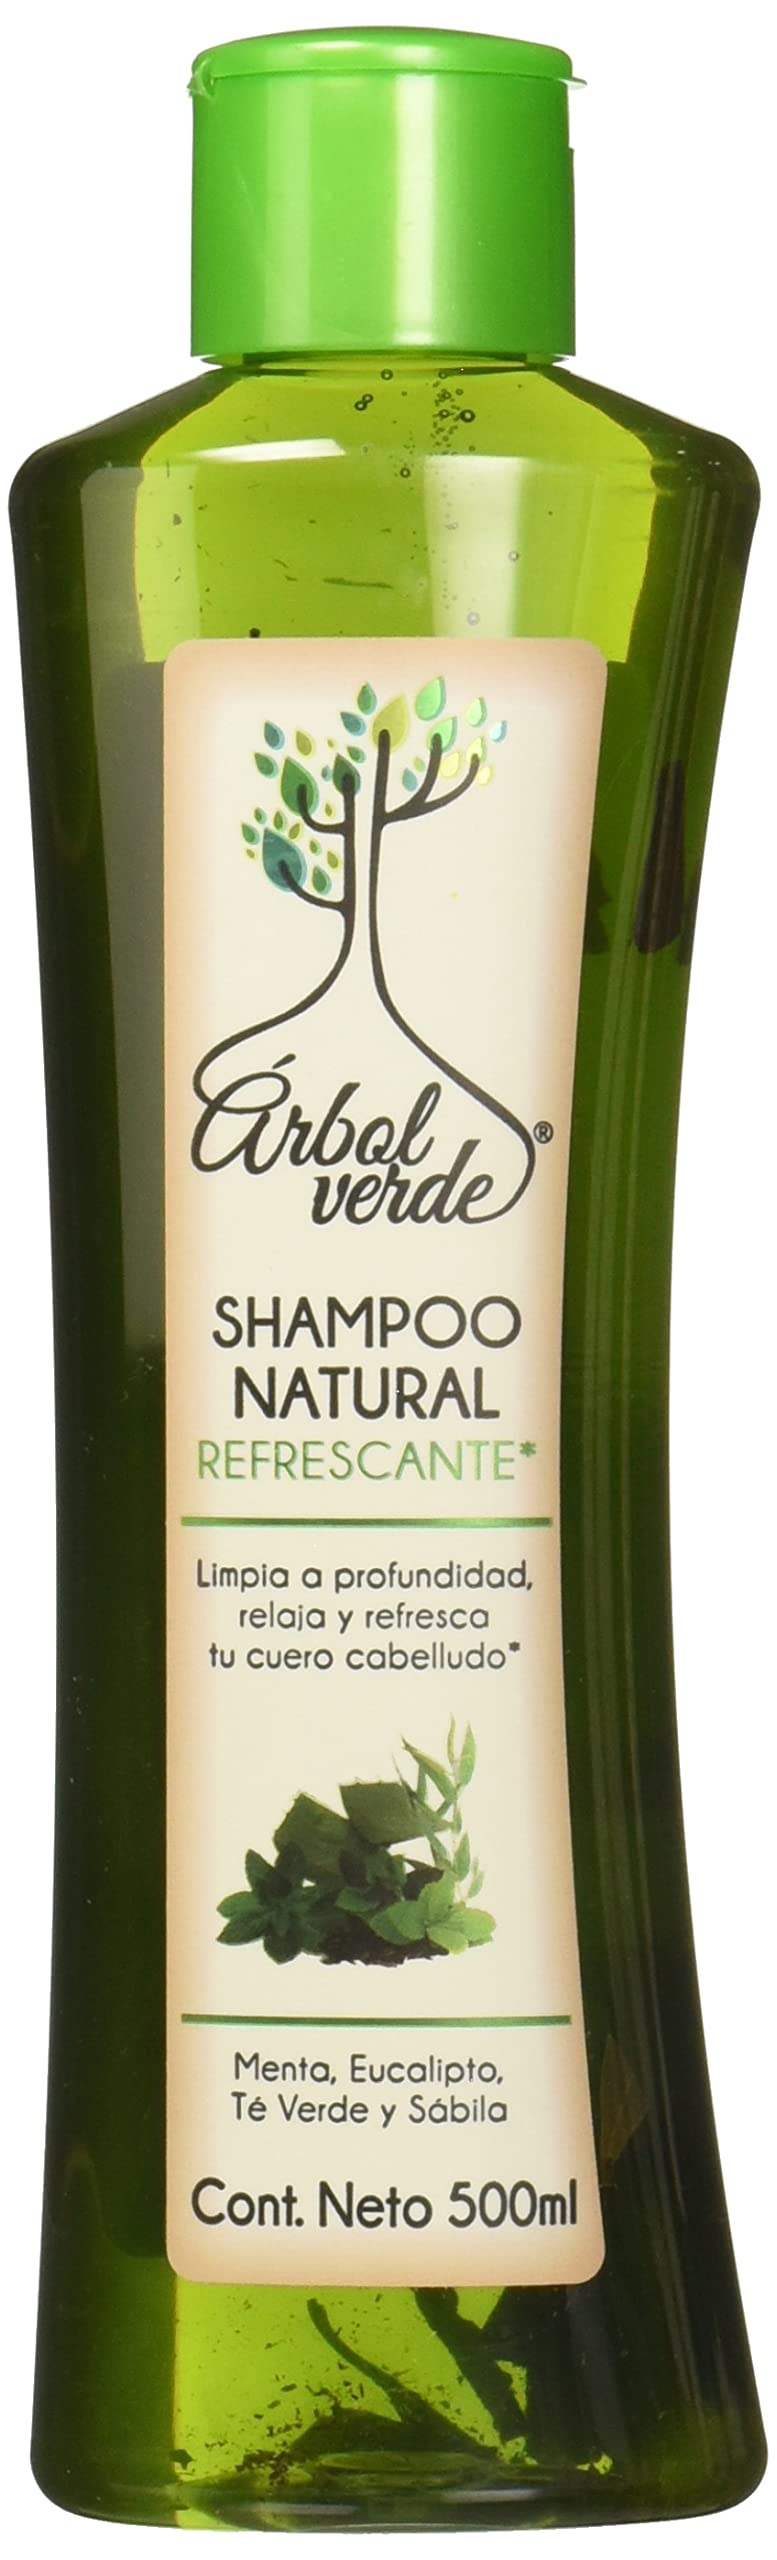 szampon natural